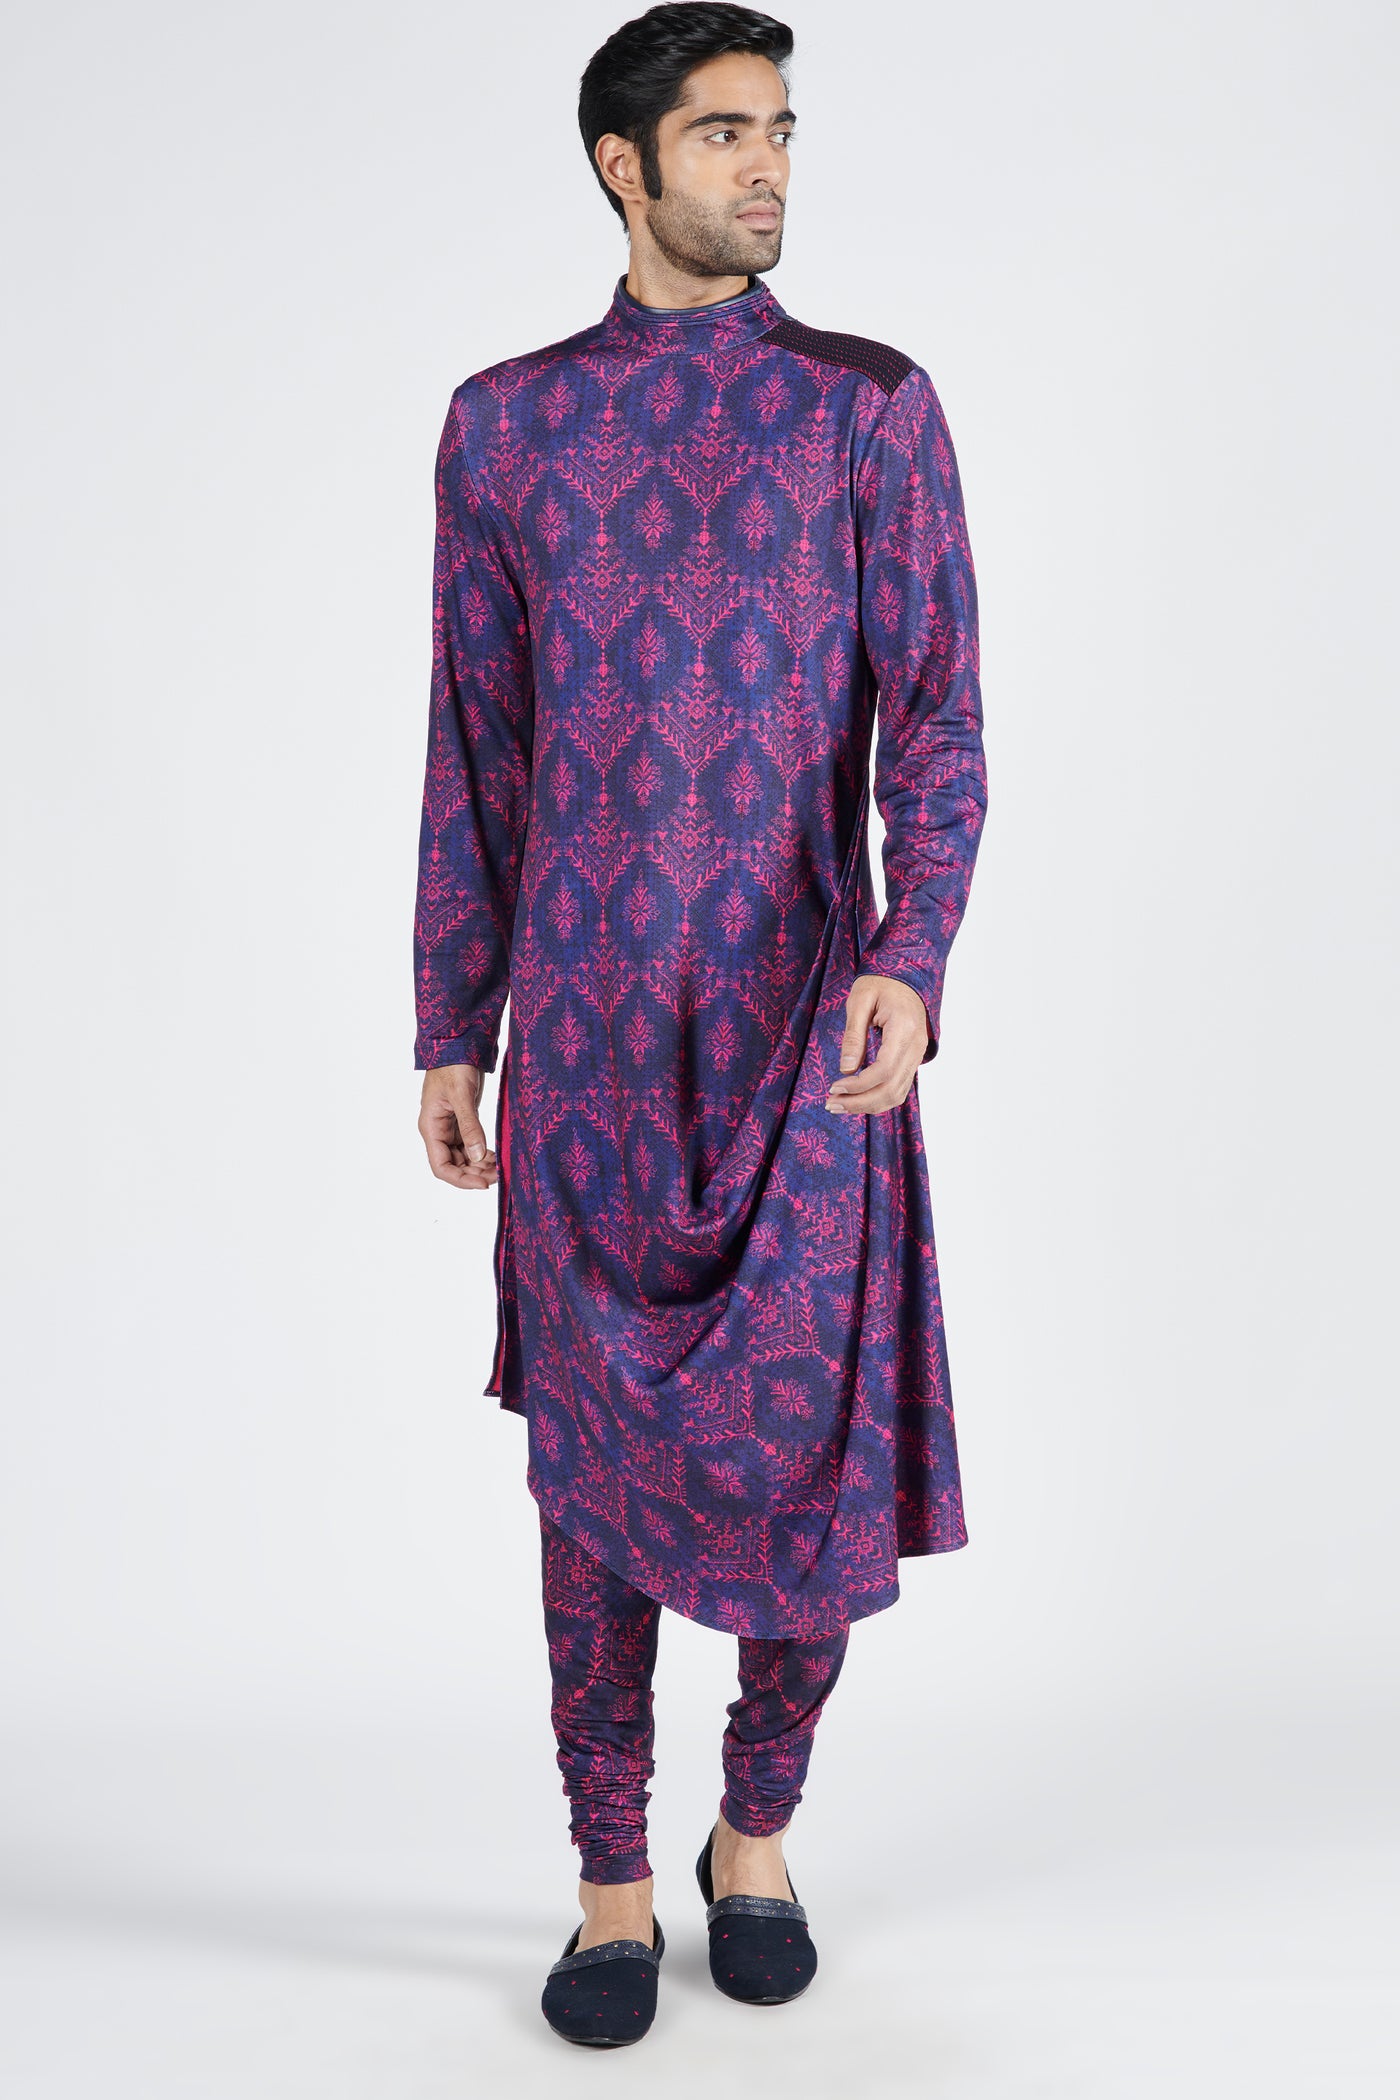 Shantanu & Nikhil Tribal Printed Churidar indian designer wear online shopping melange singapore